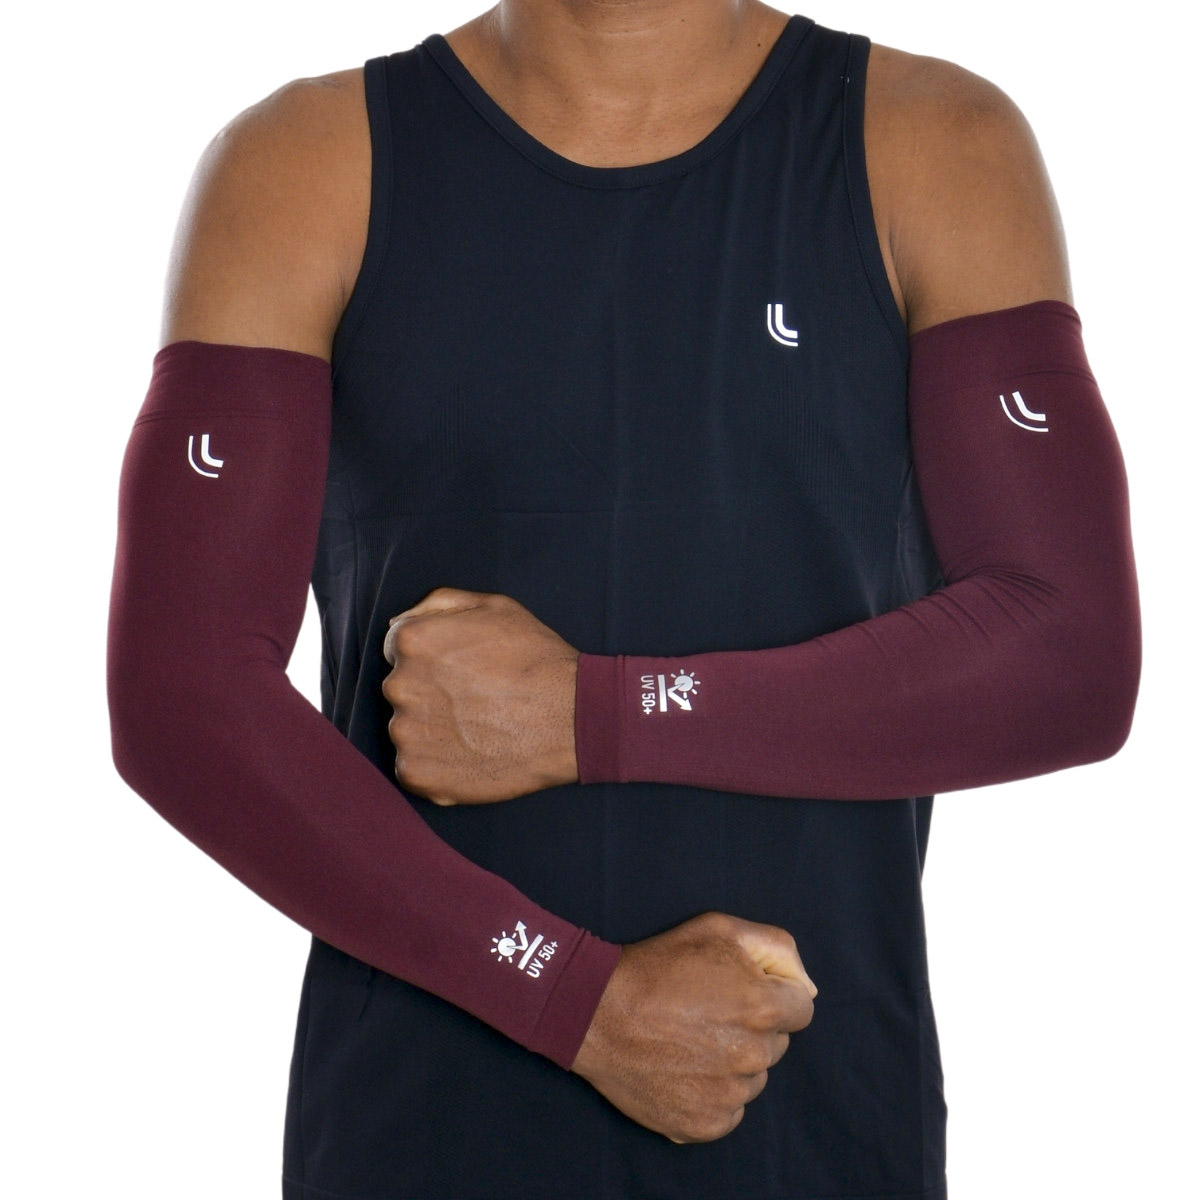 Manguito unissex Lupo proteção de braço para esportes Lupo